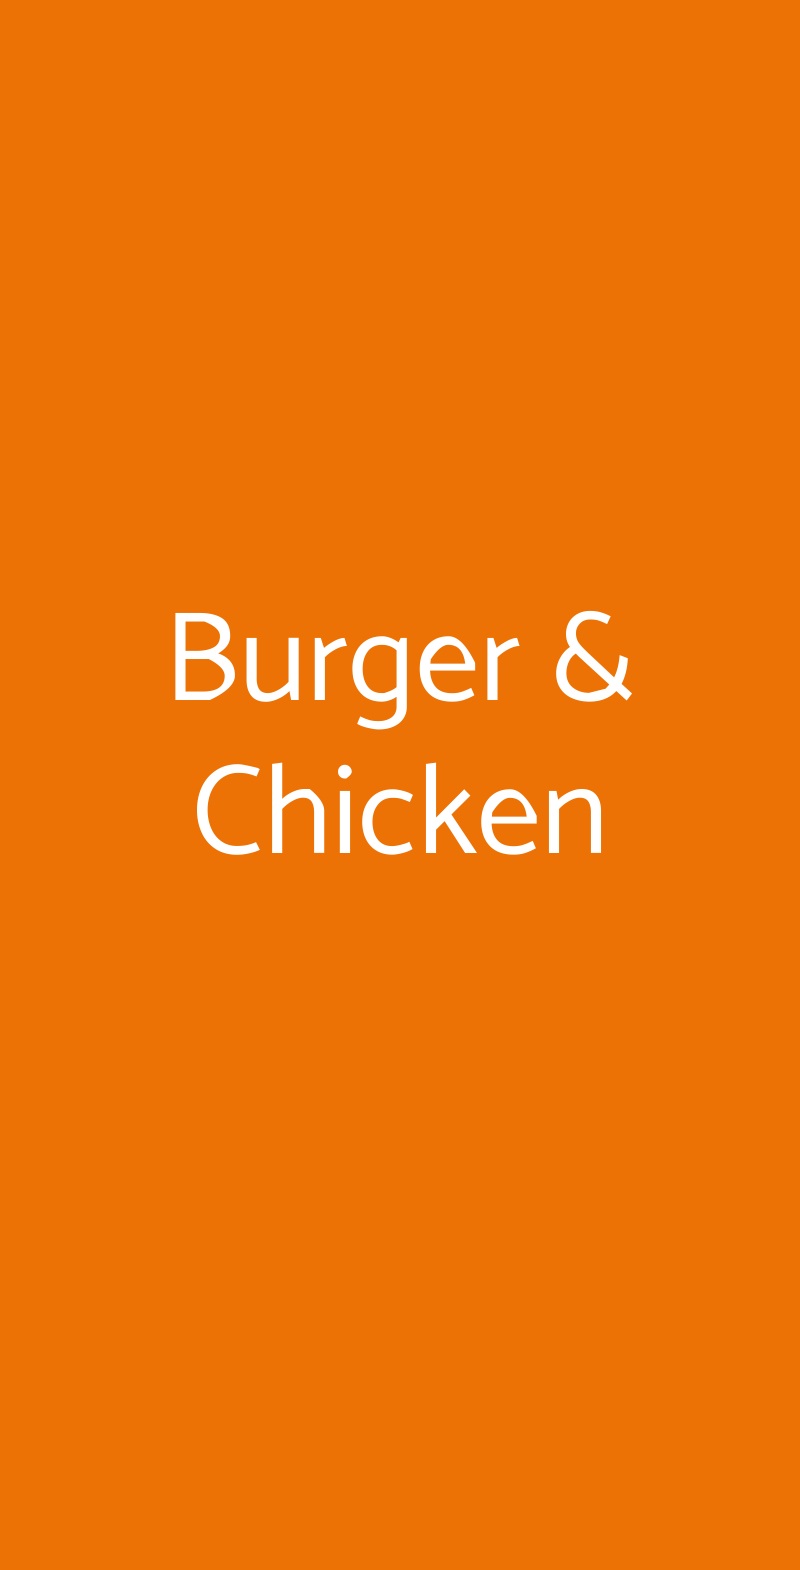 Burger & Chicken Varese menù 1 pagina